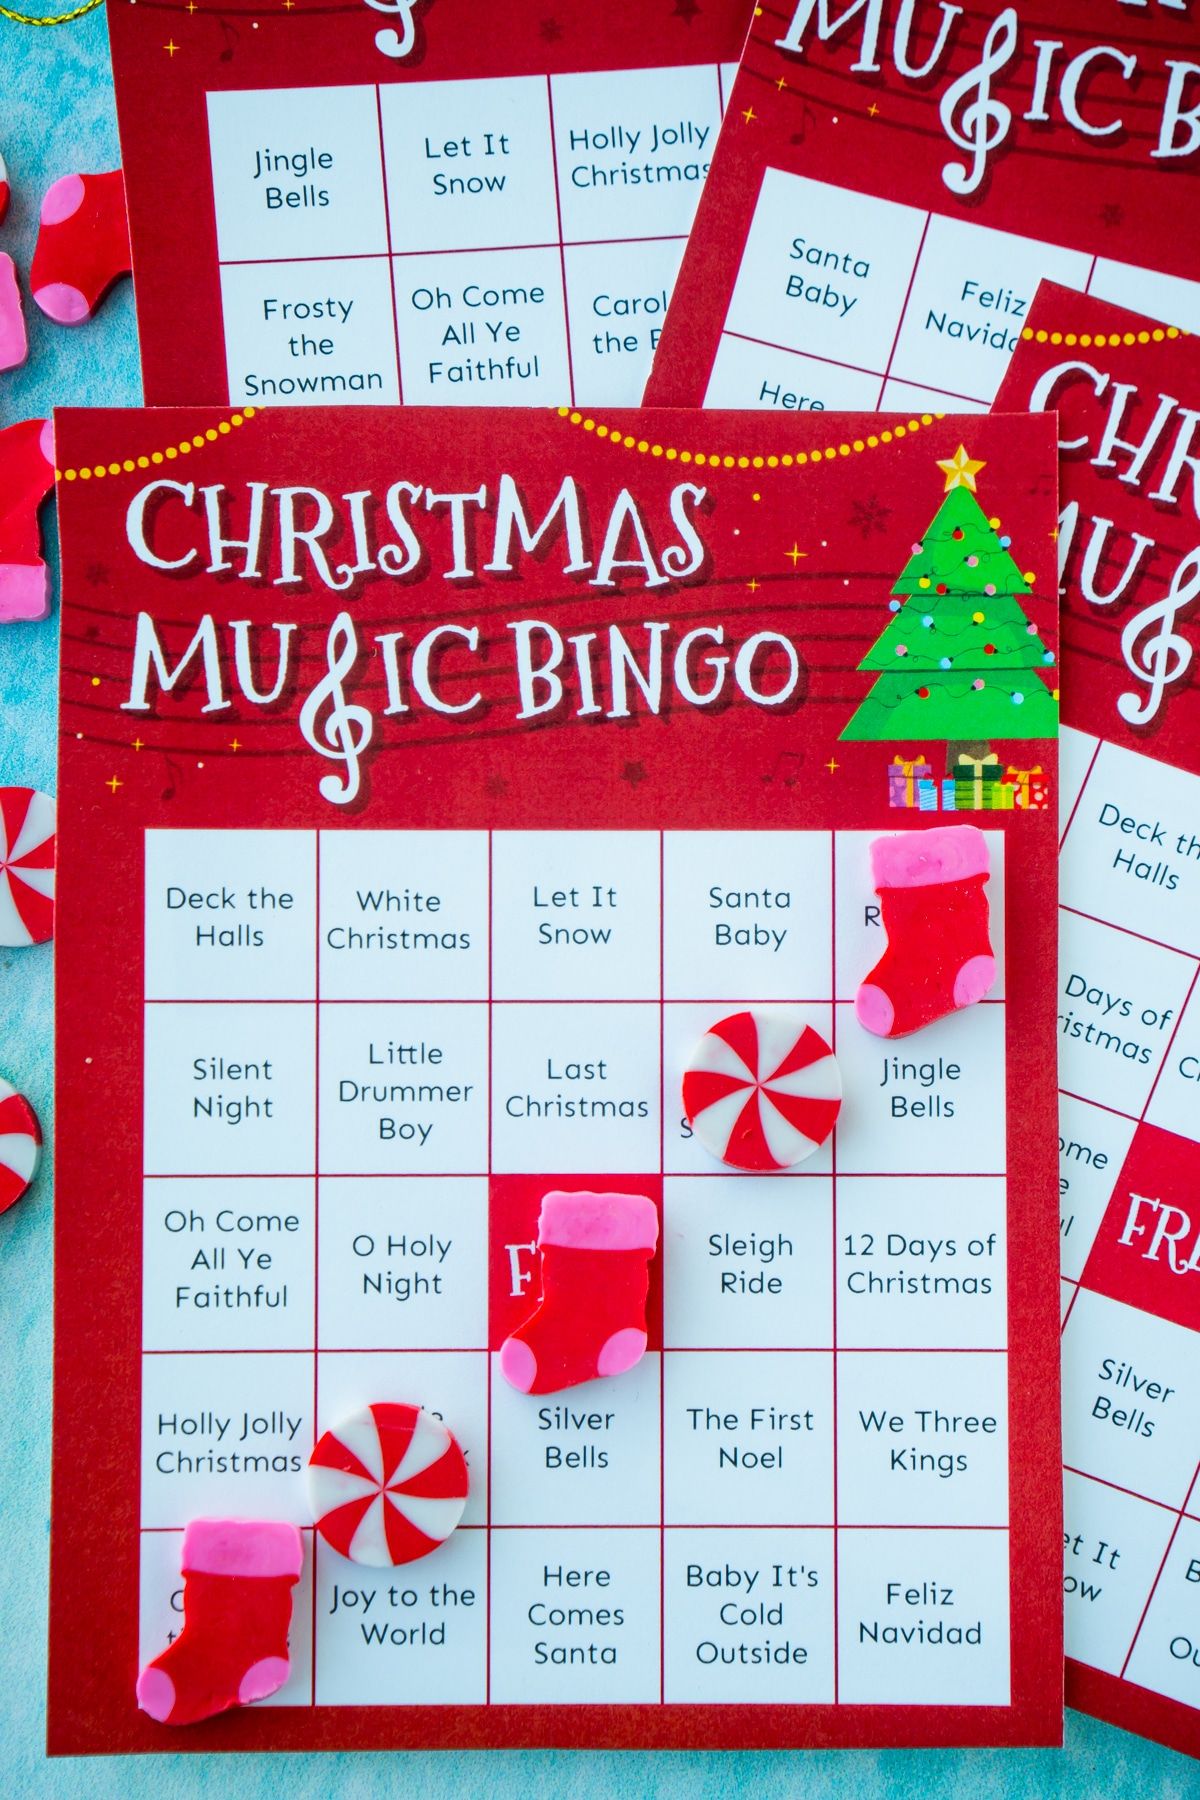 Božična glasbena bingo karta z bingom iz božičnih radirk